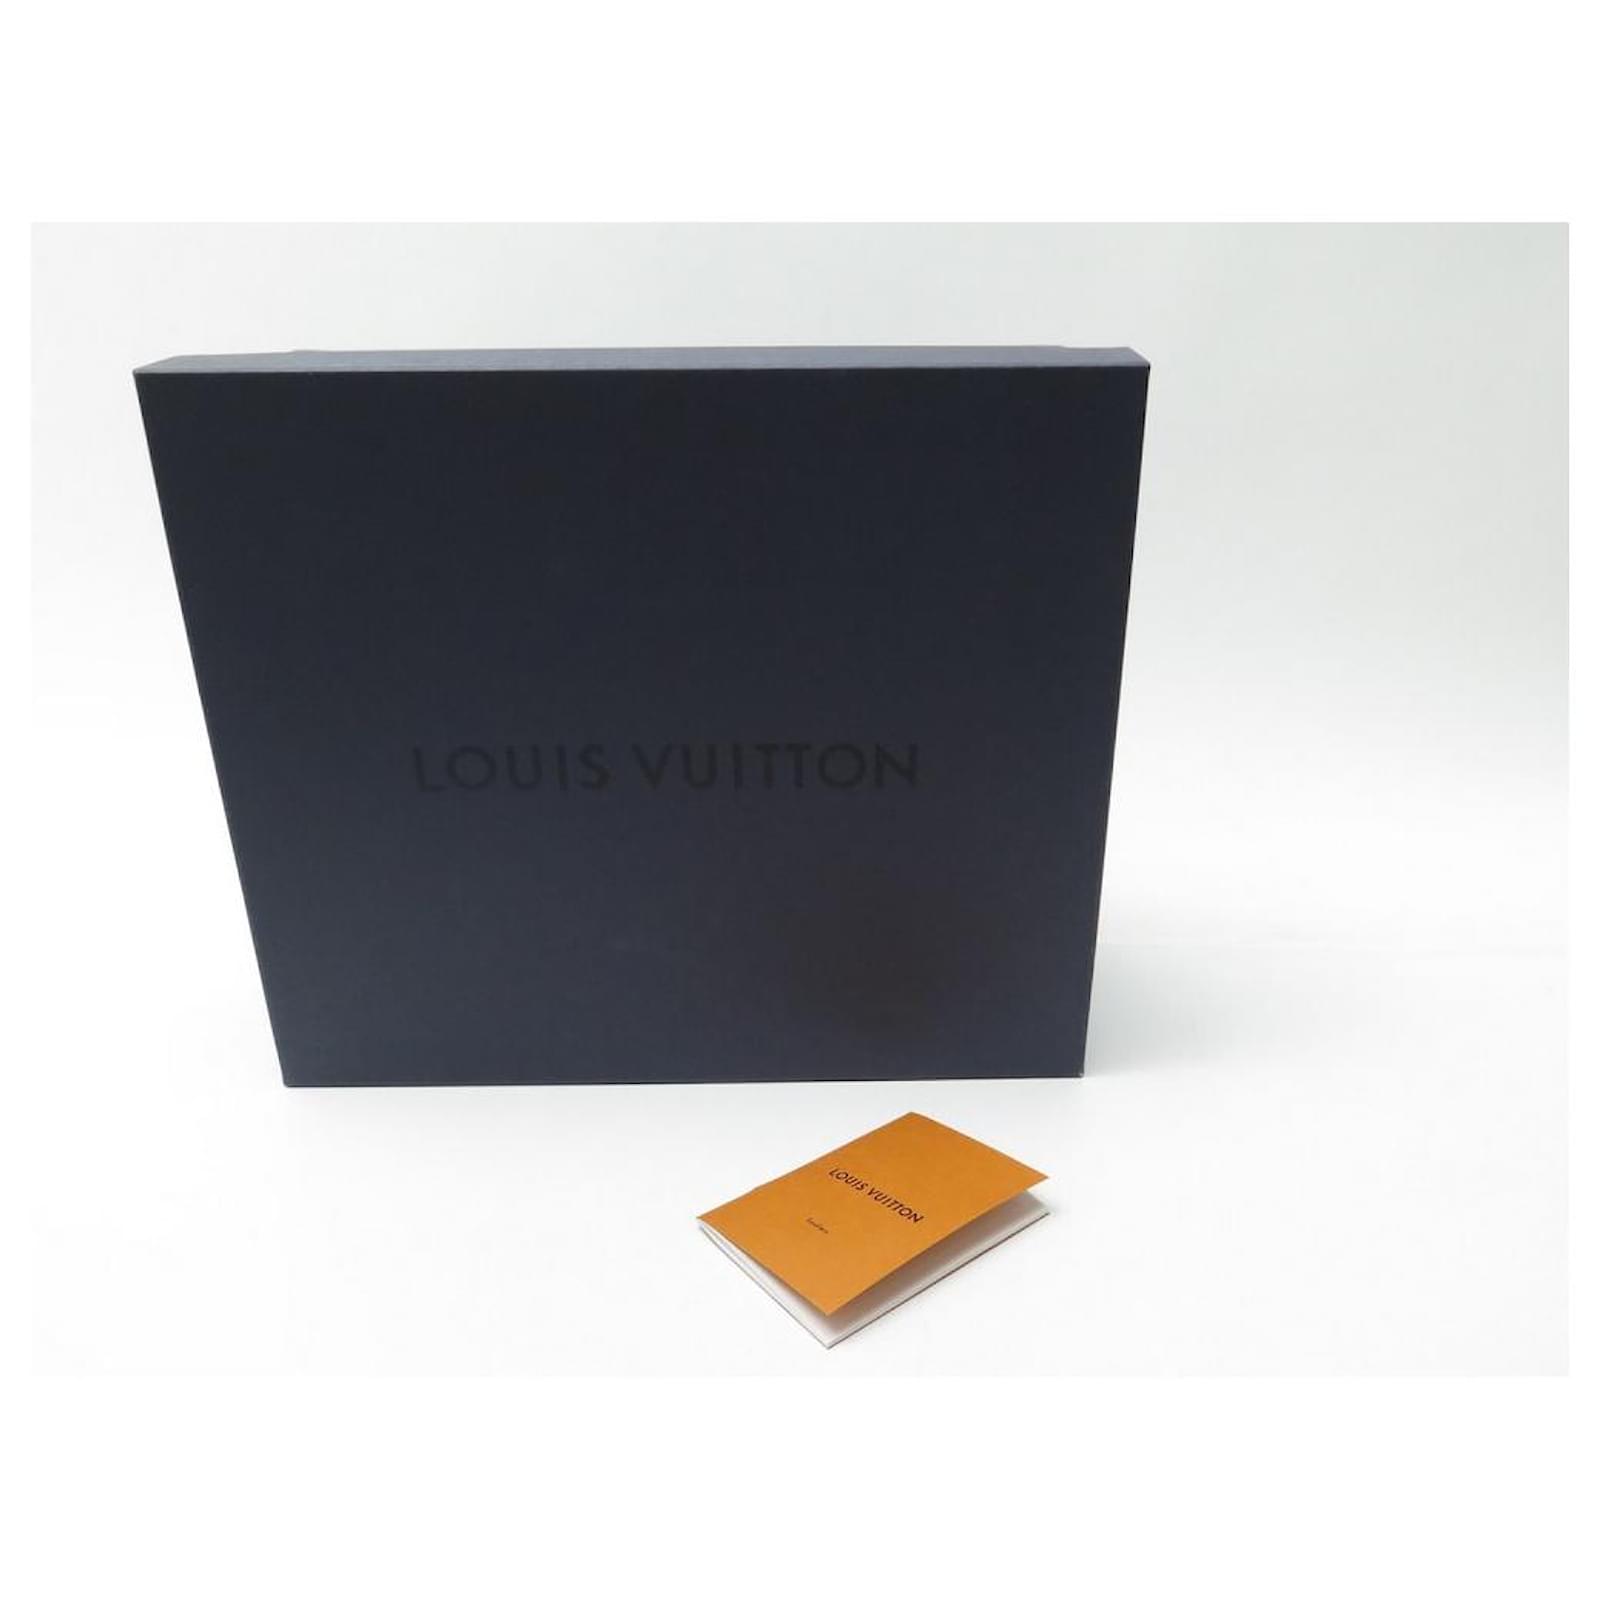 Hermès NEW LOUIS VUITTON SHOES LV ARCHLIGHT BASKETS 42 ED LIMITED